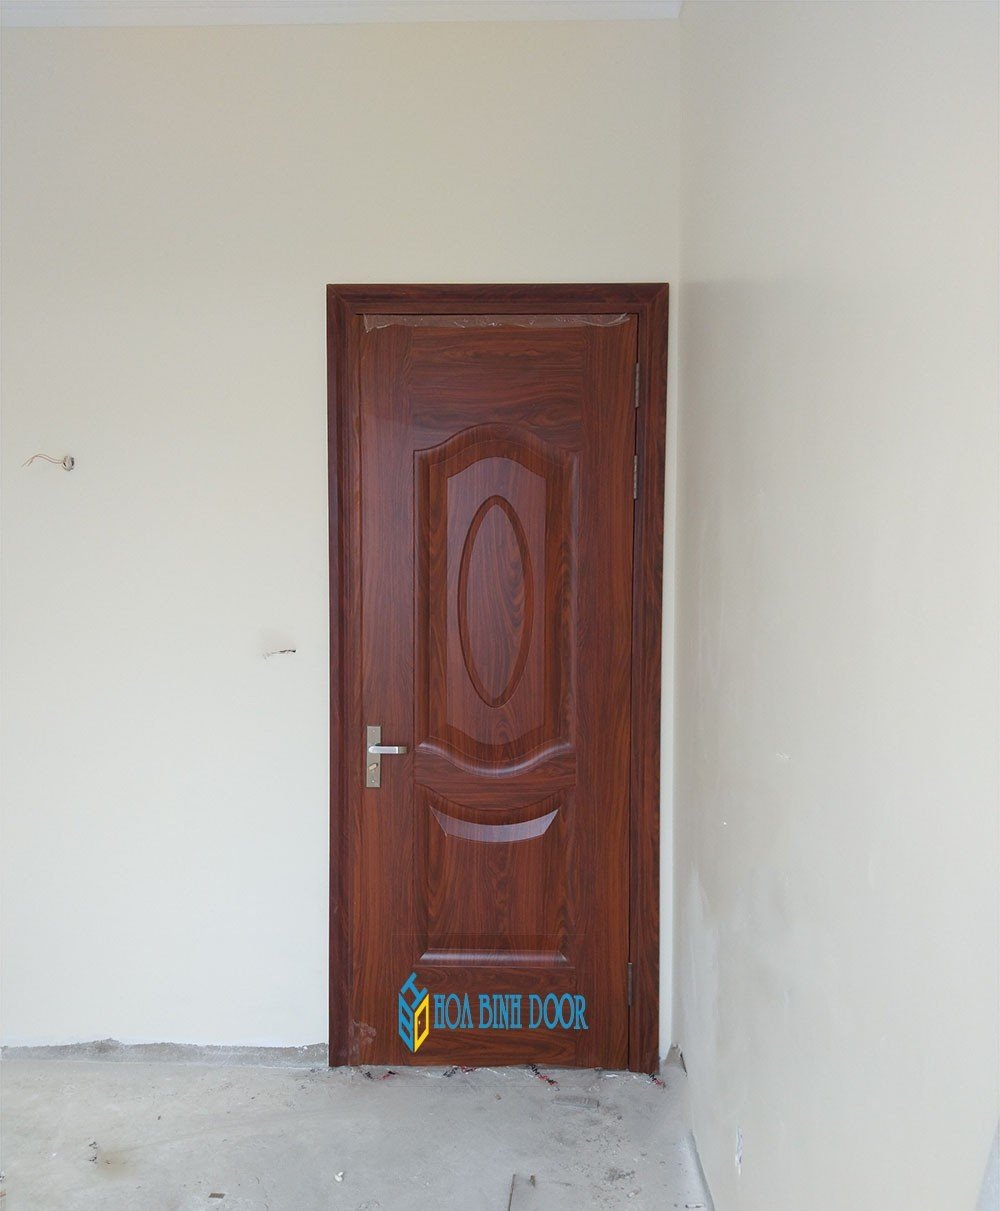 Giá cửa thép vân gỗ tại Lâm Đồng